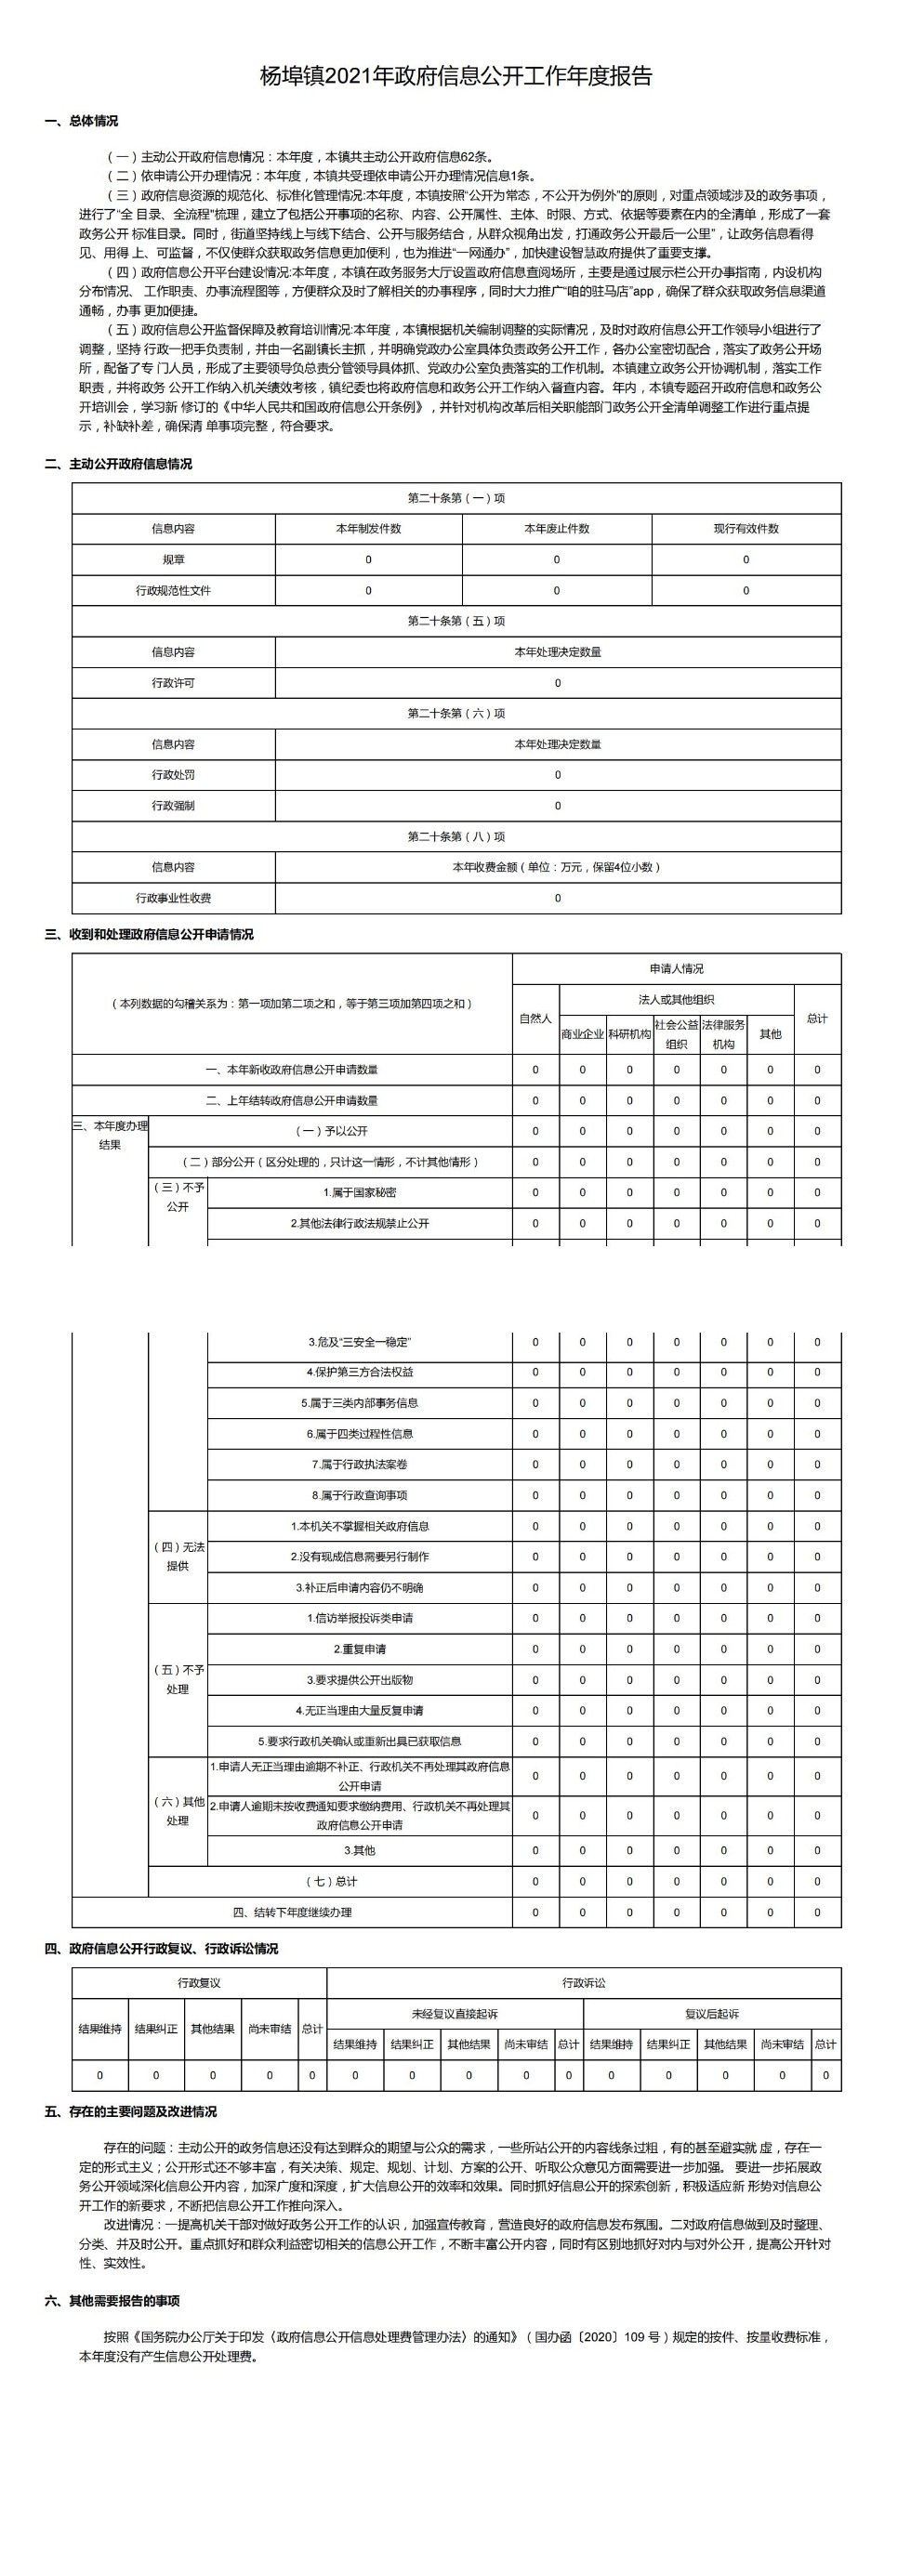 杨埠镇2021年政府信息公开工作年度报告_00.jpg